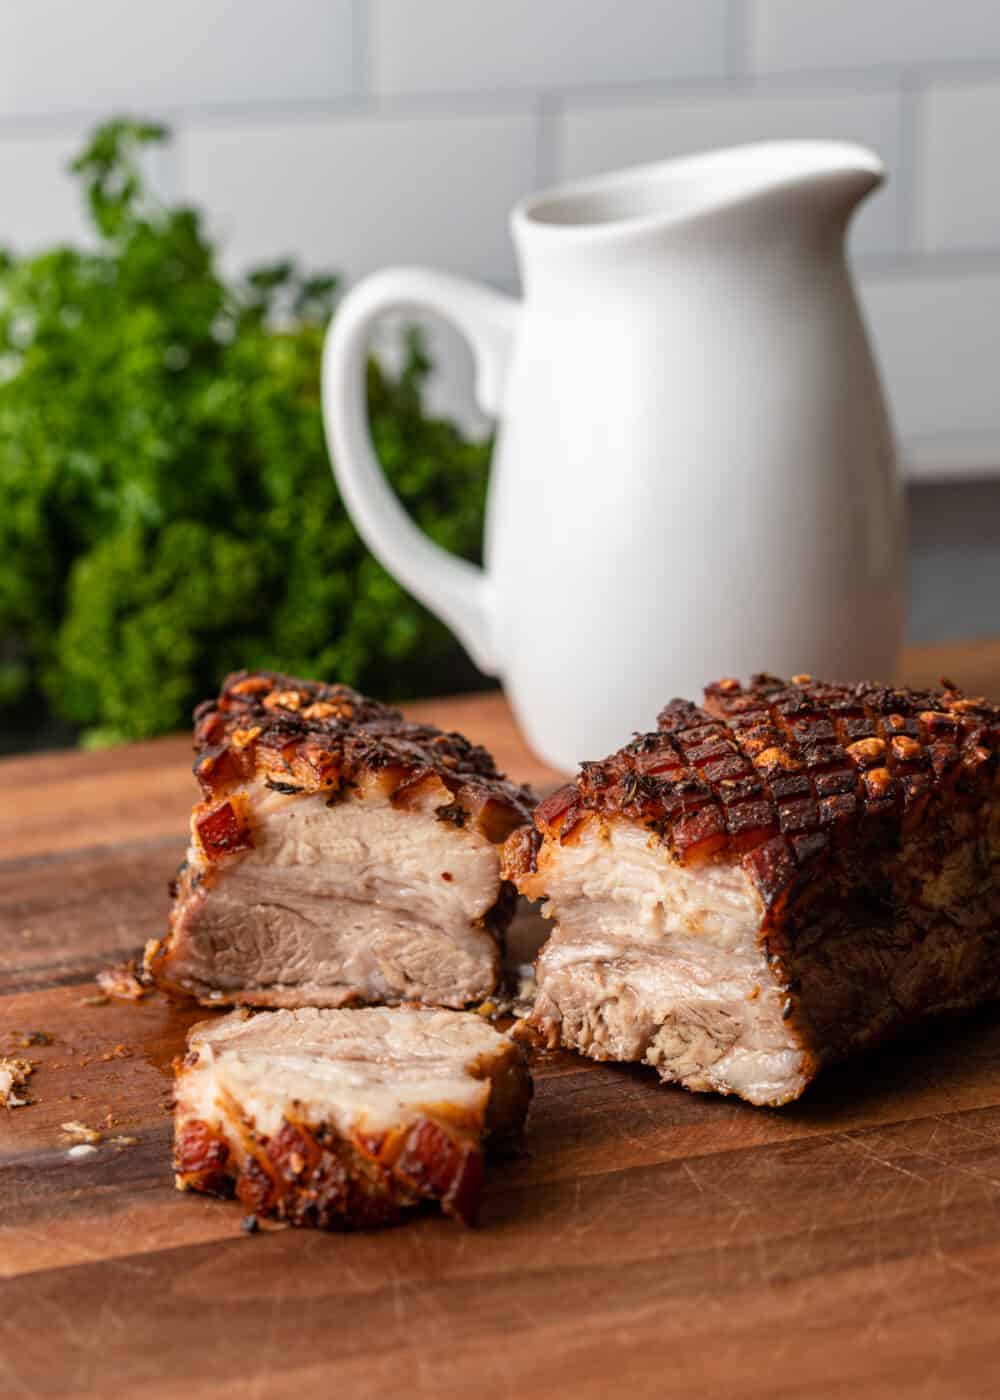 halves of roasted pork belly